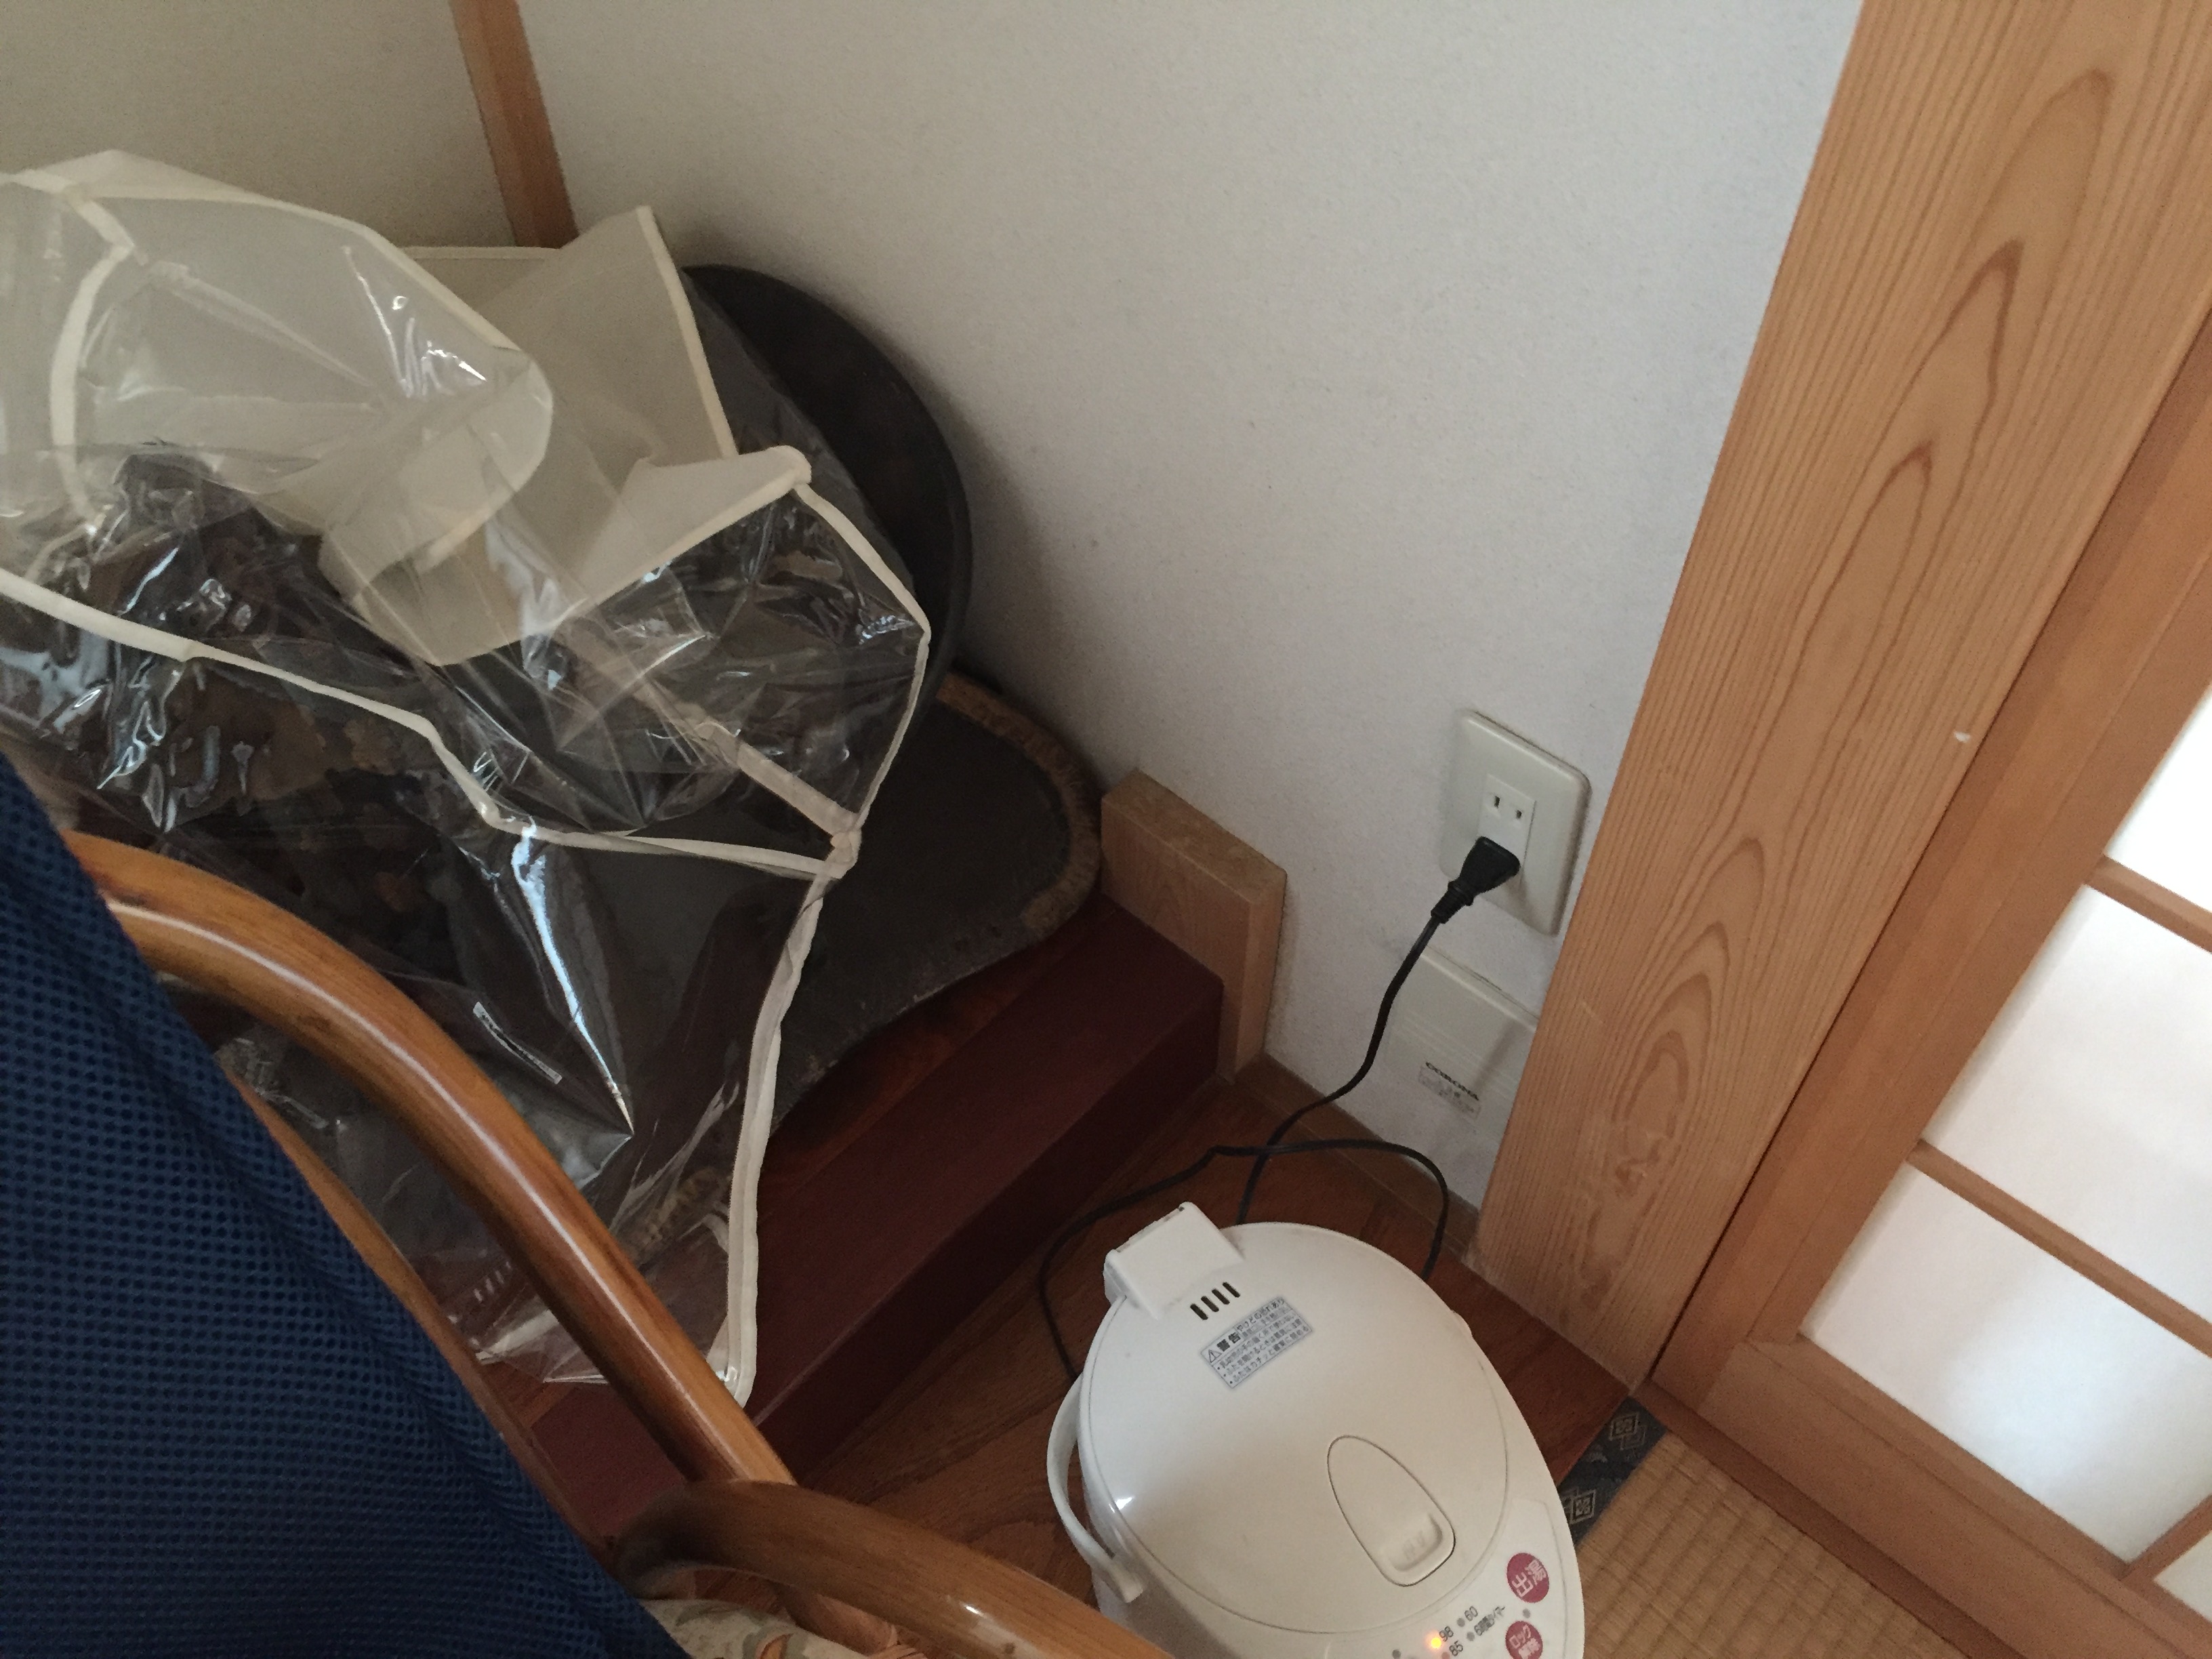 福島県耶麻郡猪苗代町のお家で新しくテレビ配線工事をした事例